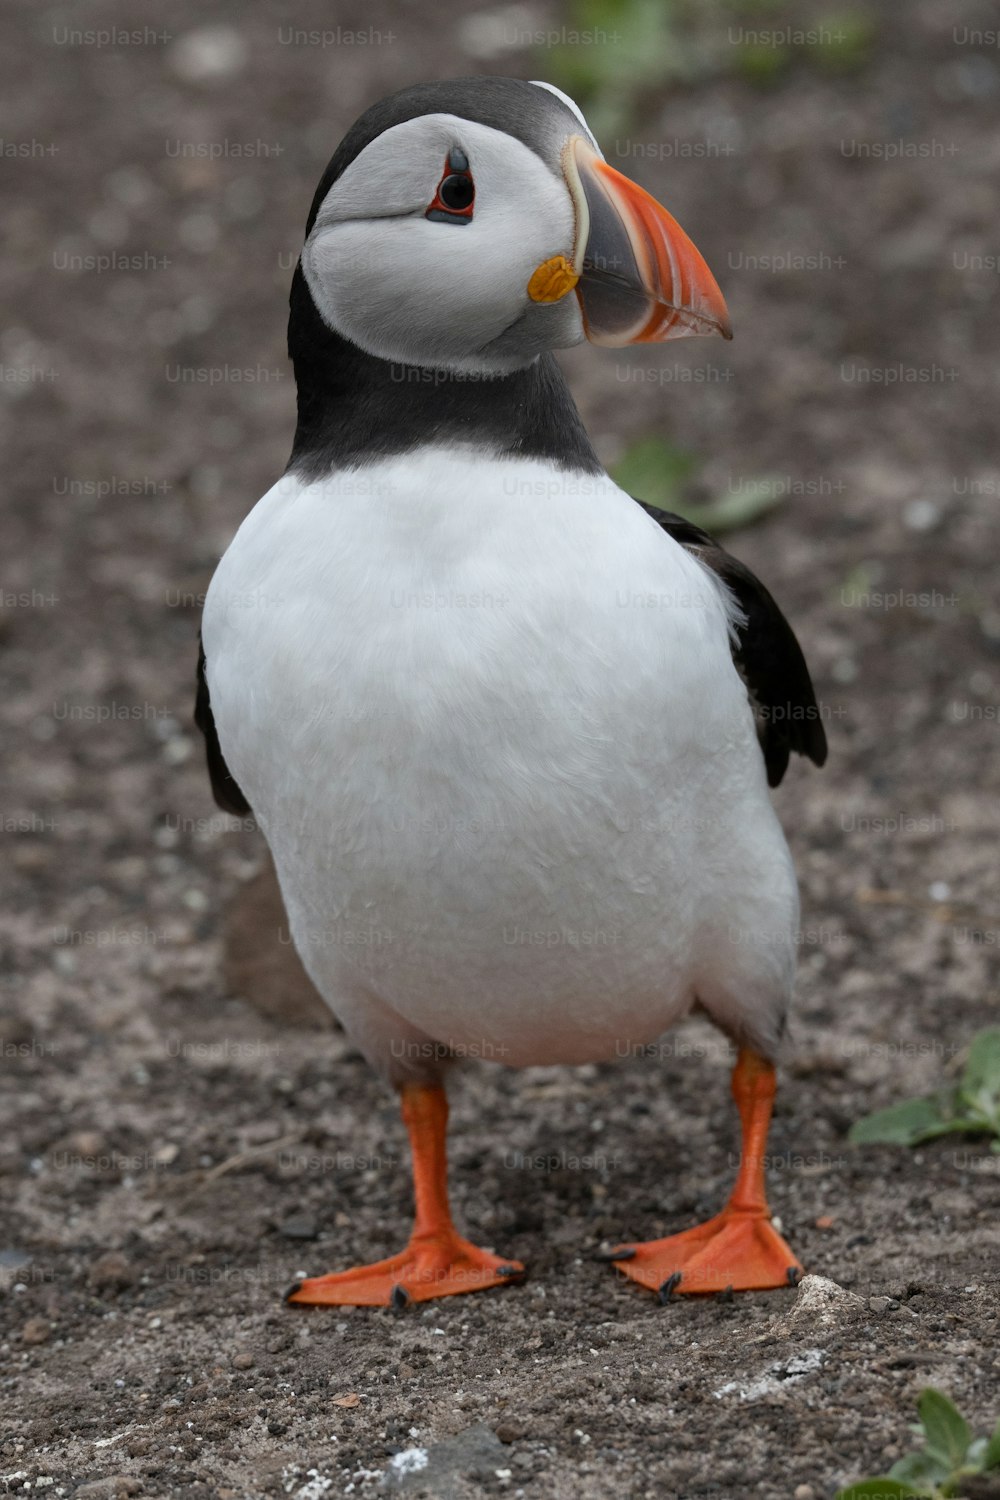 Un pájaro blanco y negro con un pico naranja